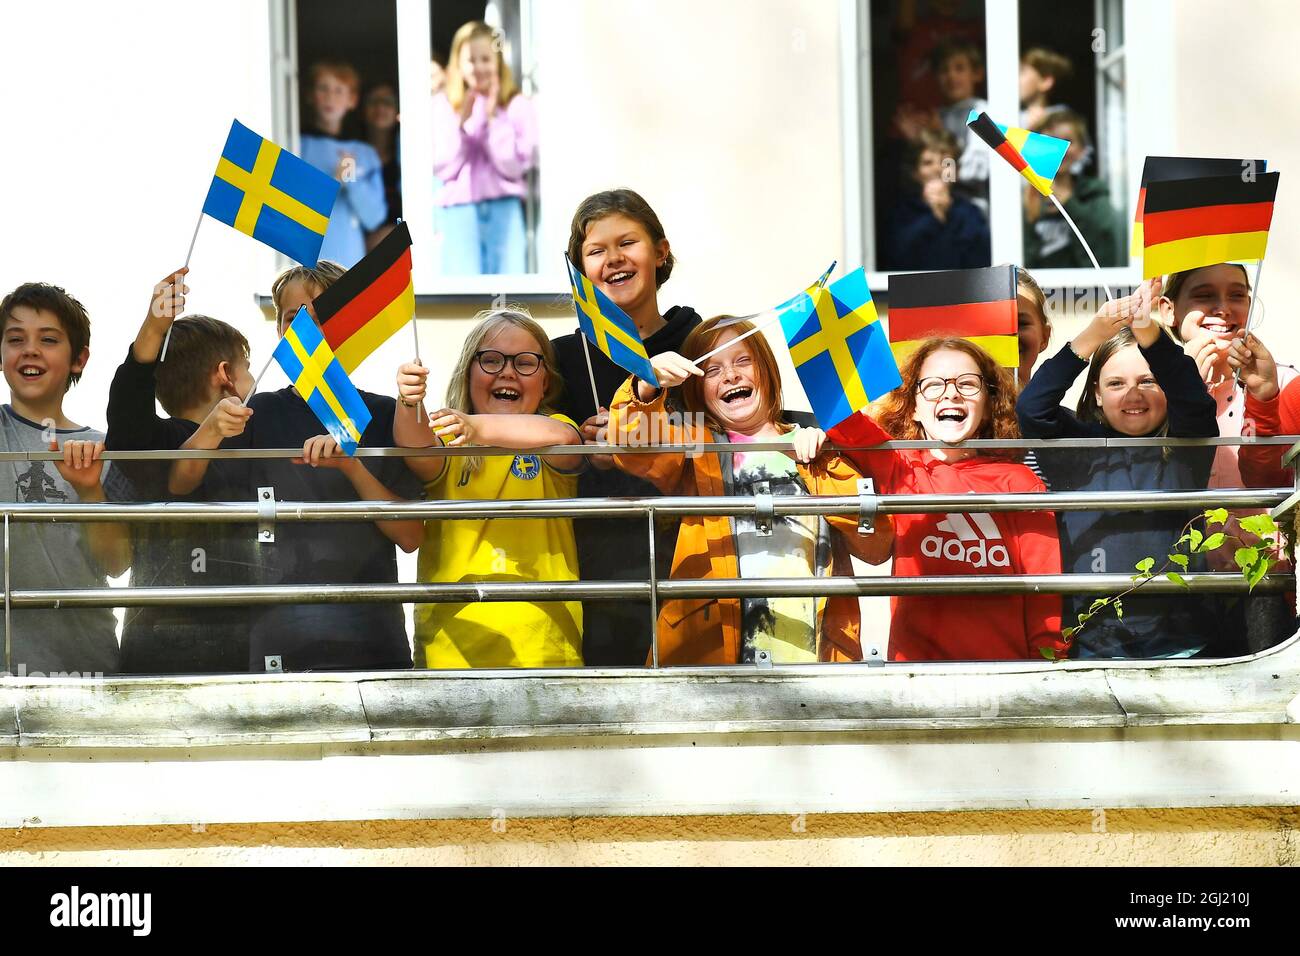 Königin Silvia von Schweden und Elke Büdenbender besuchen am 08. September 2021 die Deutsche Schule in Stockholm, Schweden. Der deutsche Bundespräsident ist zu einem dreitägigen Staatsbesuch in Schweden.Foto: Claudio Bresciani / TT / Code 10090 Stockfoto